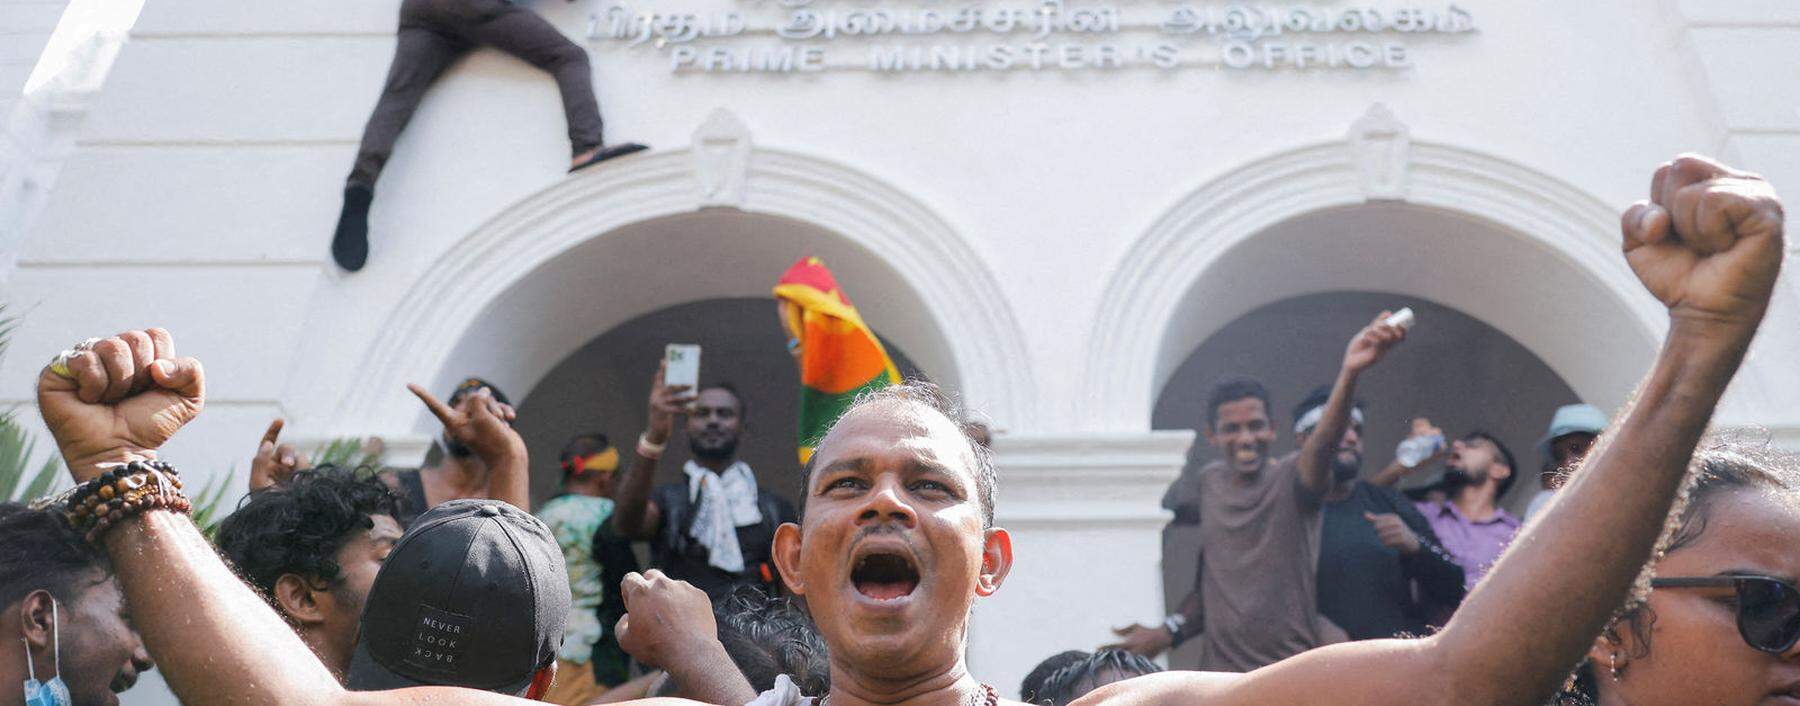 Aufstand in Sri Lanka. Wirtschaftskrise, Misswirtschaft der Mächtigen und die schlechte soziale Lage trieben Tausende Demonstranten auf die Straße.